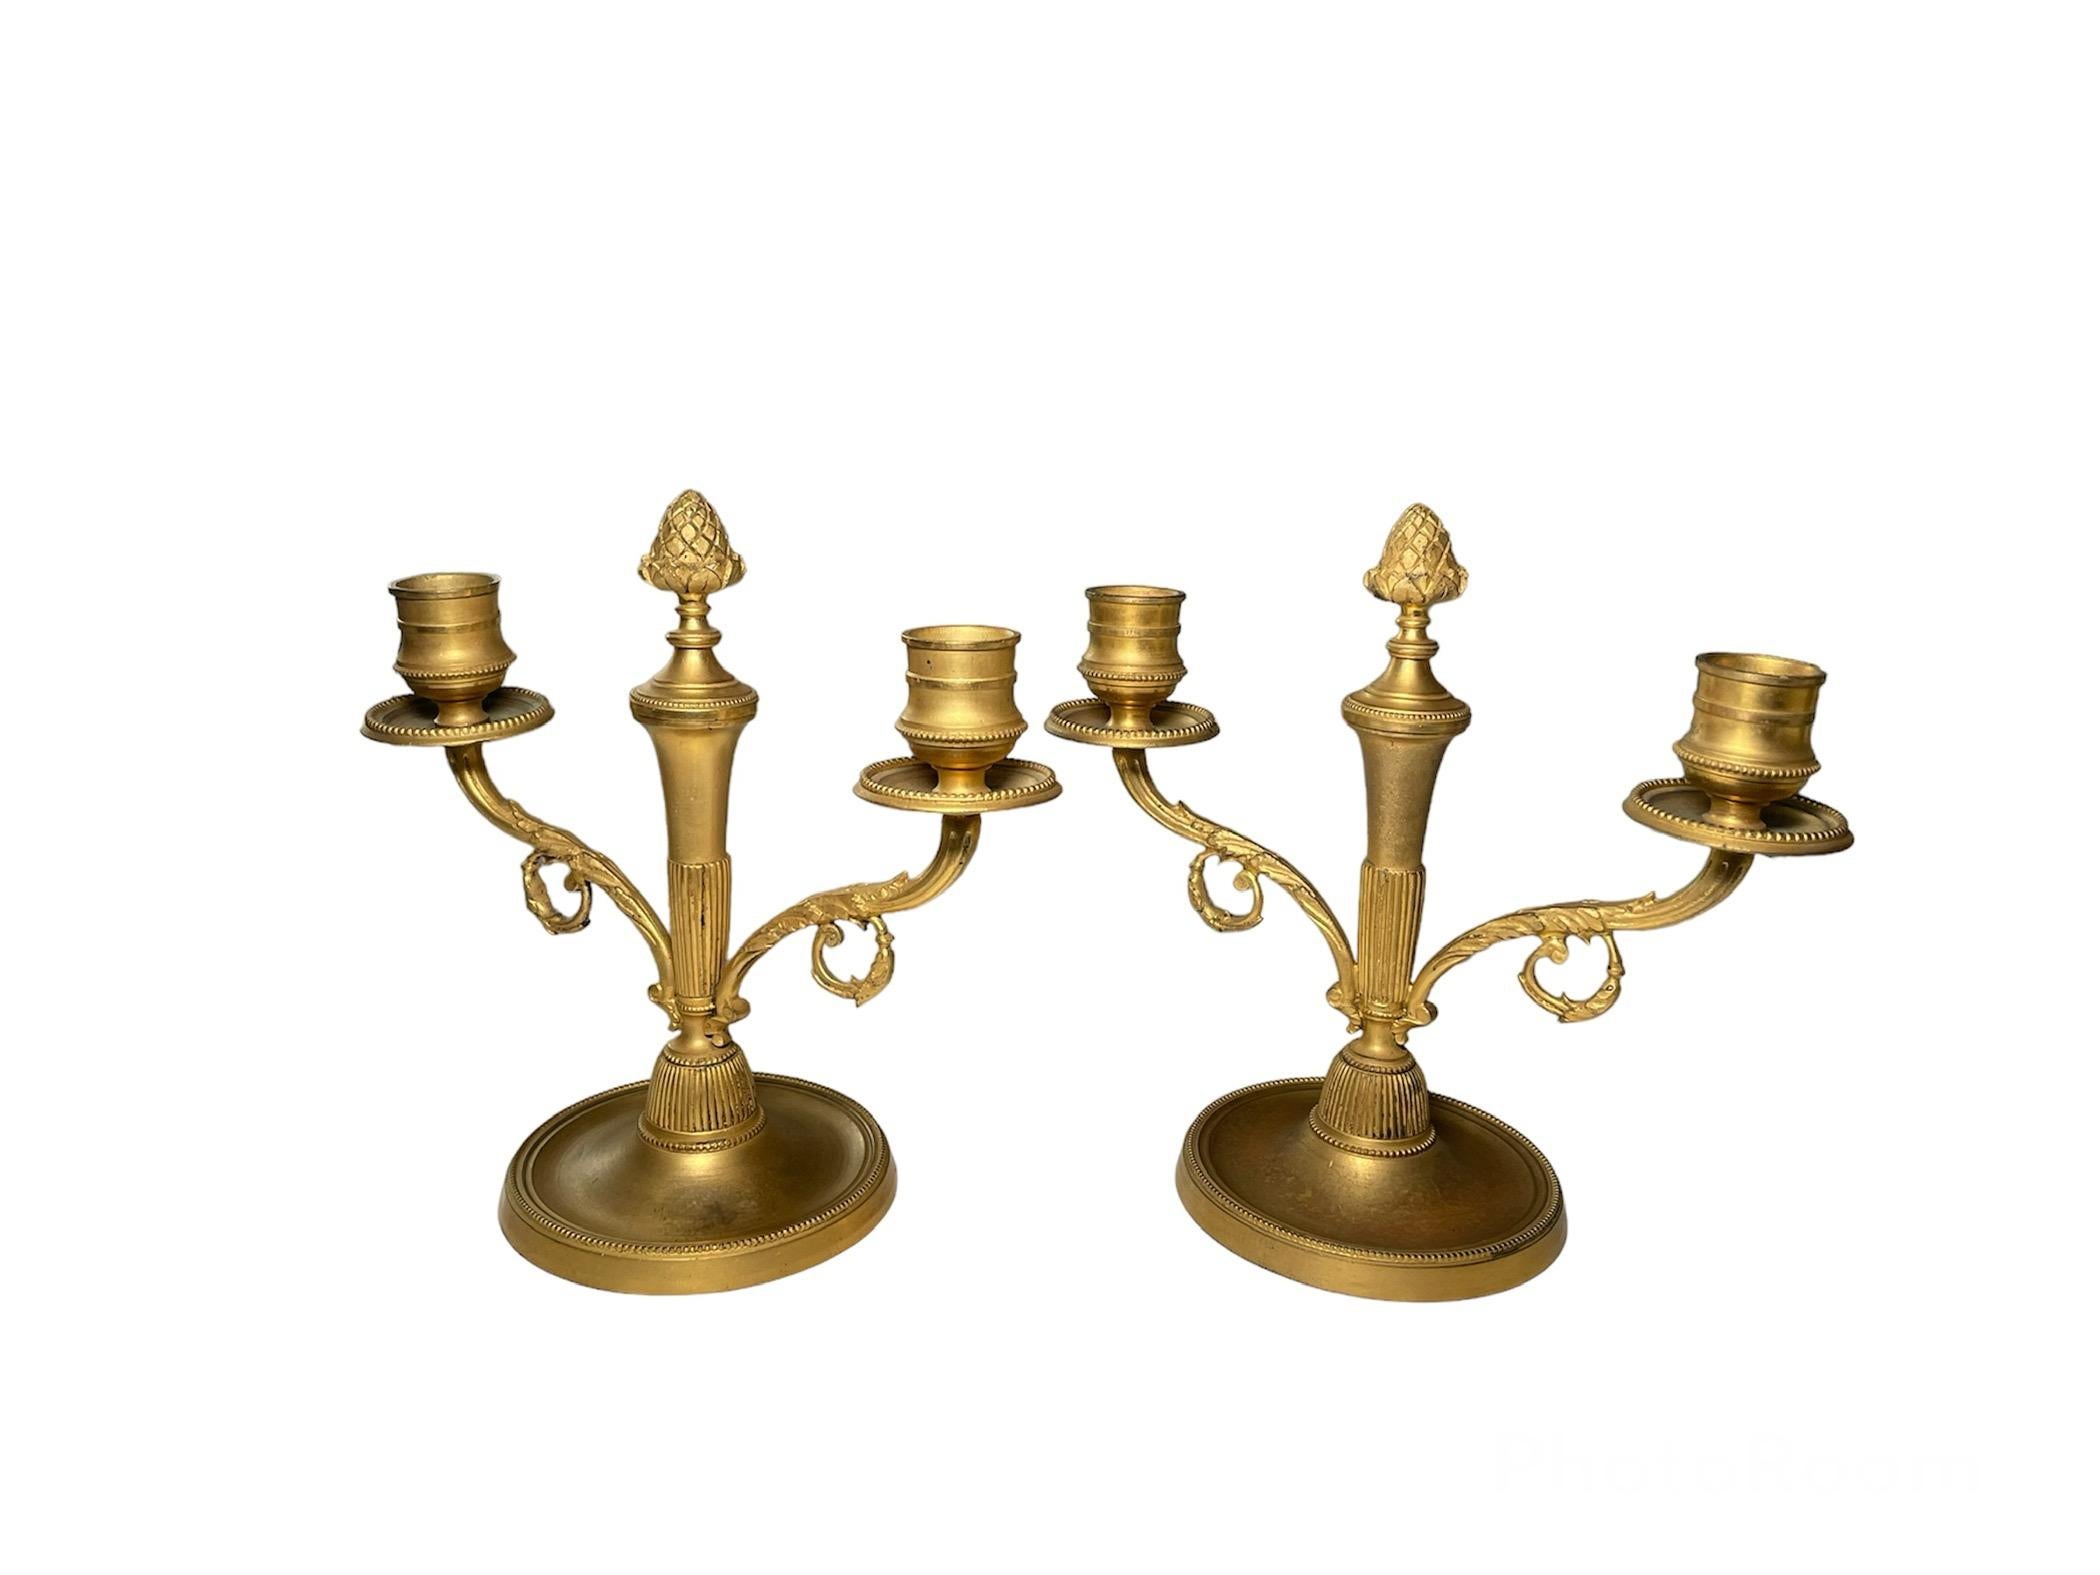 Il s'agit d'une paire de bougeoirs doubles en métal bronzé doré. Ils représentent des chandeliers doubles décorés de quelques volutes de feuilles d'acanthe dans leurs Branch et des pommes de pin en leur centre servant de fleuron. Elles reposent sur